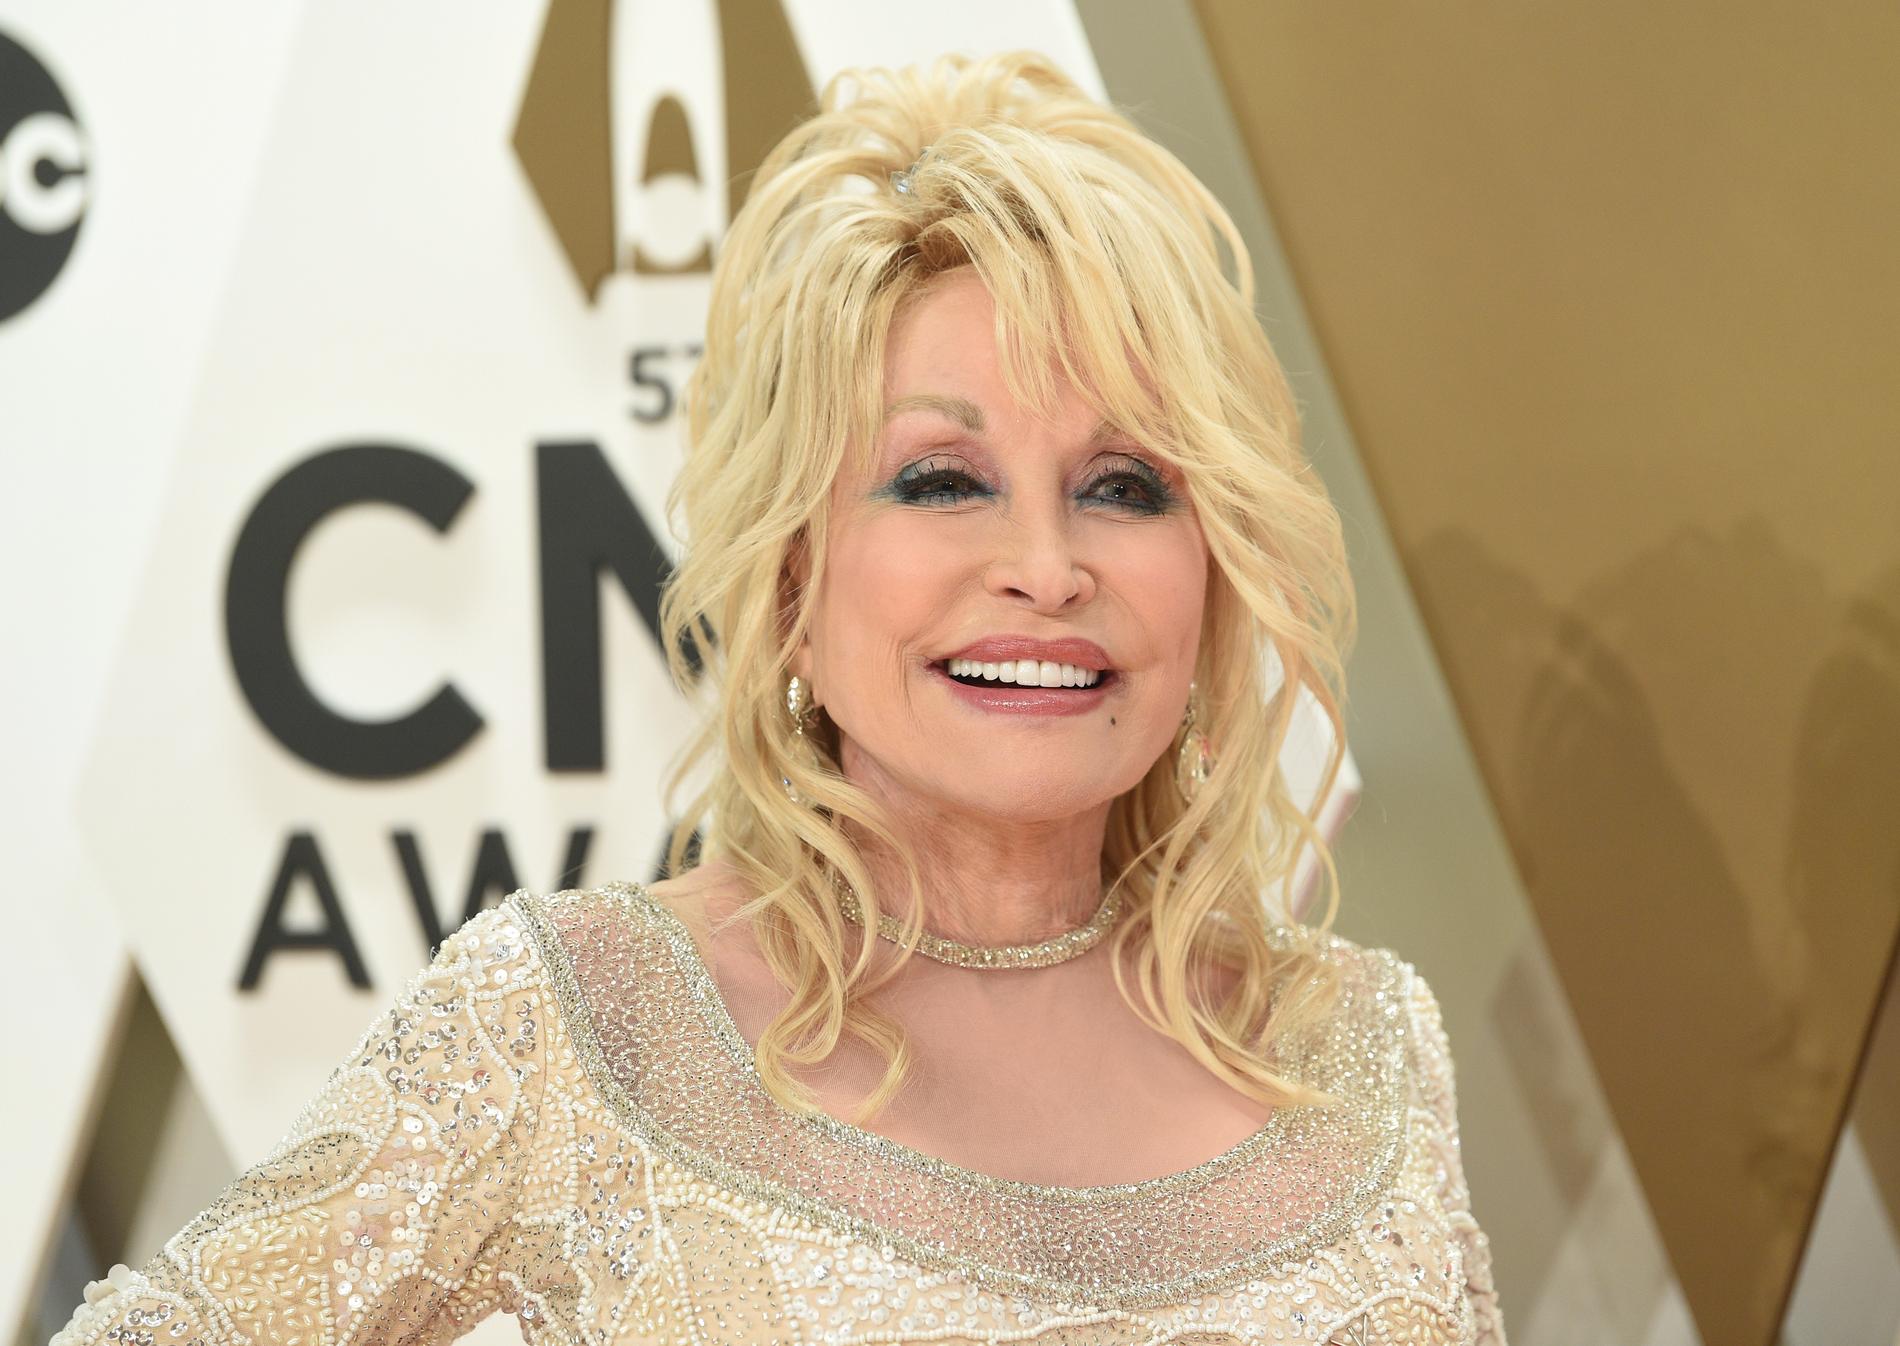 Dolly Parton ska läsa sagor för barn, i hopp om att trösta i oroliga tider i världen. Arkivbild.